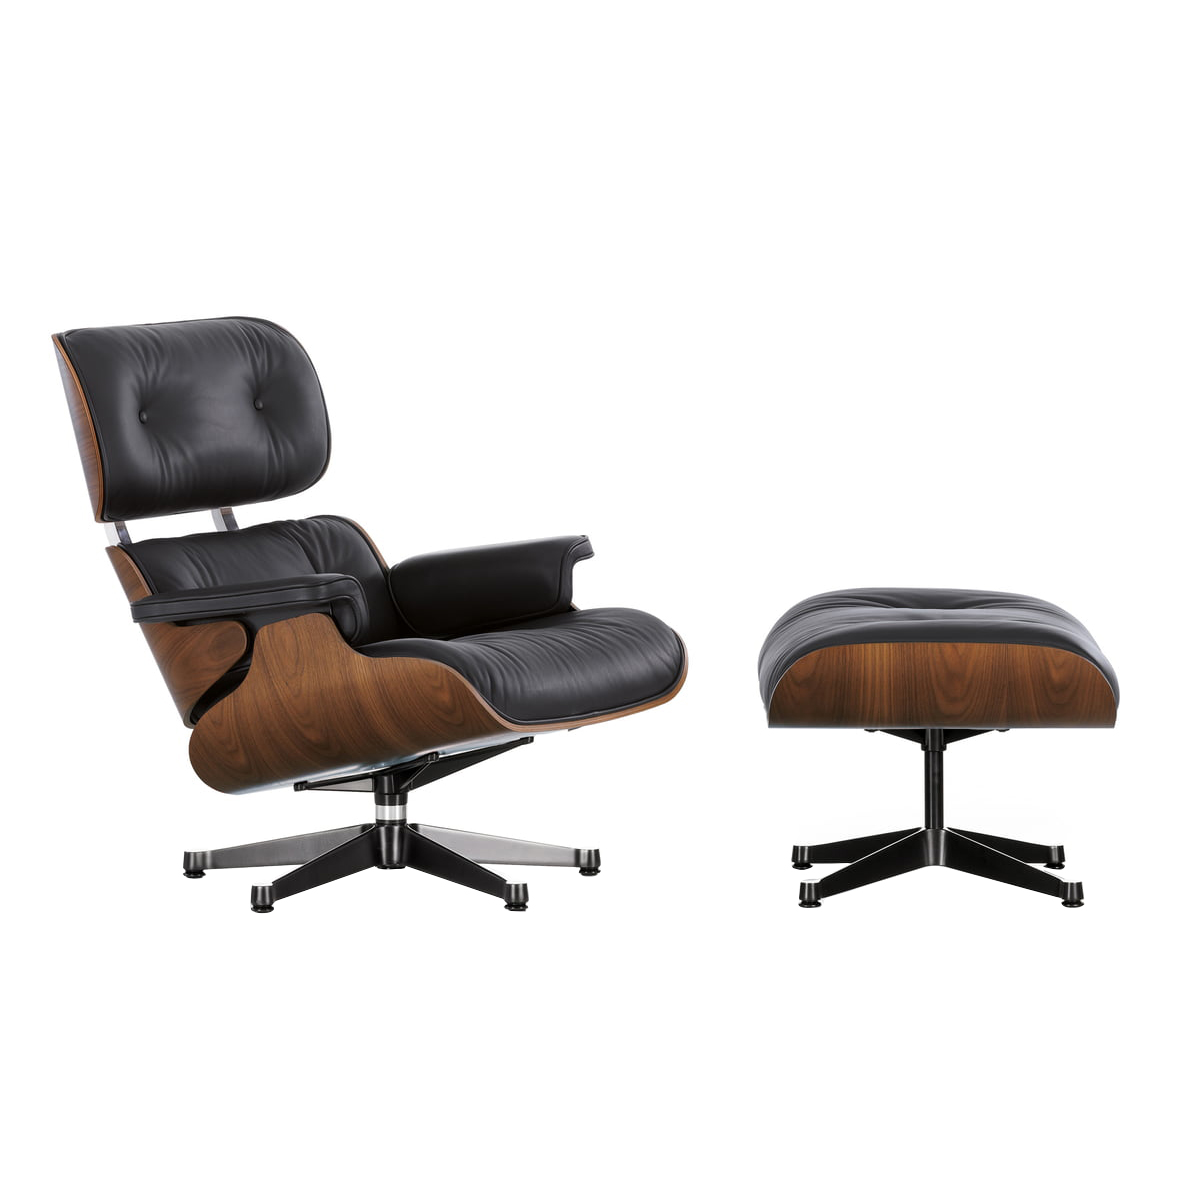 Vitra - Eames Lounge Chair Sessel & Ottoman - schwarz nero/Leder Premium F 66 (nachhaltig)/Schale Nussbaum schwarz pigmentiert/Gestell poliert schwarz von Vitra